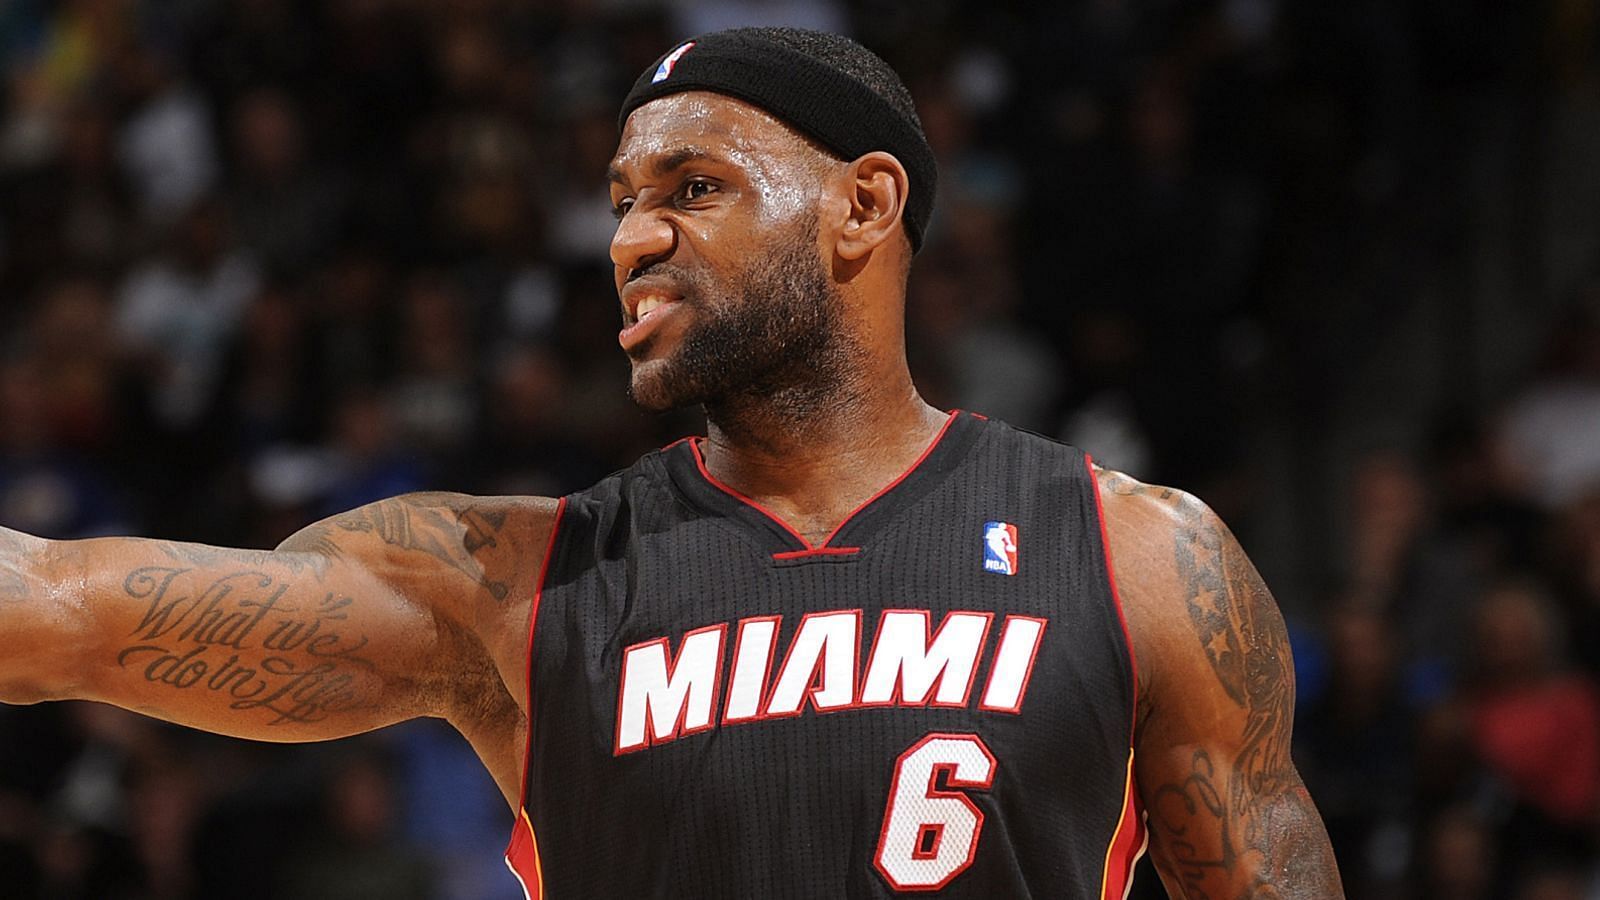 NBA Throwback - Miami Heat LeBron James